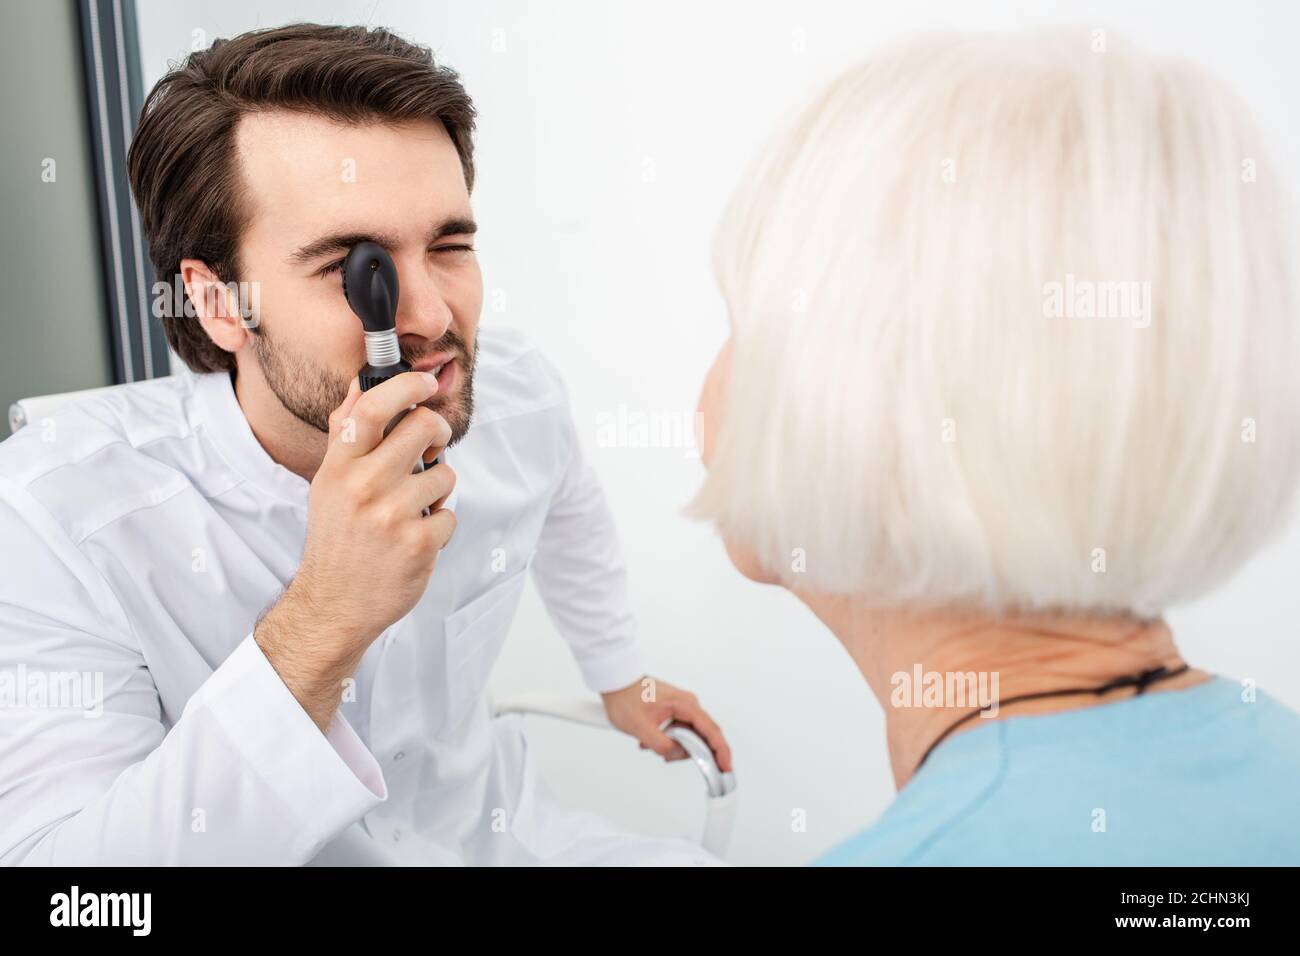 médecin optométriste examinant les yeux d'une vieille femme à l'aide d'un ophtalmoscope. Examen oculaire des personnes âgées Banque D'Images